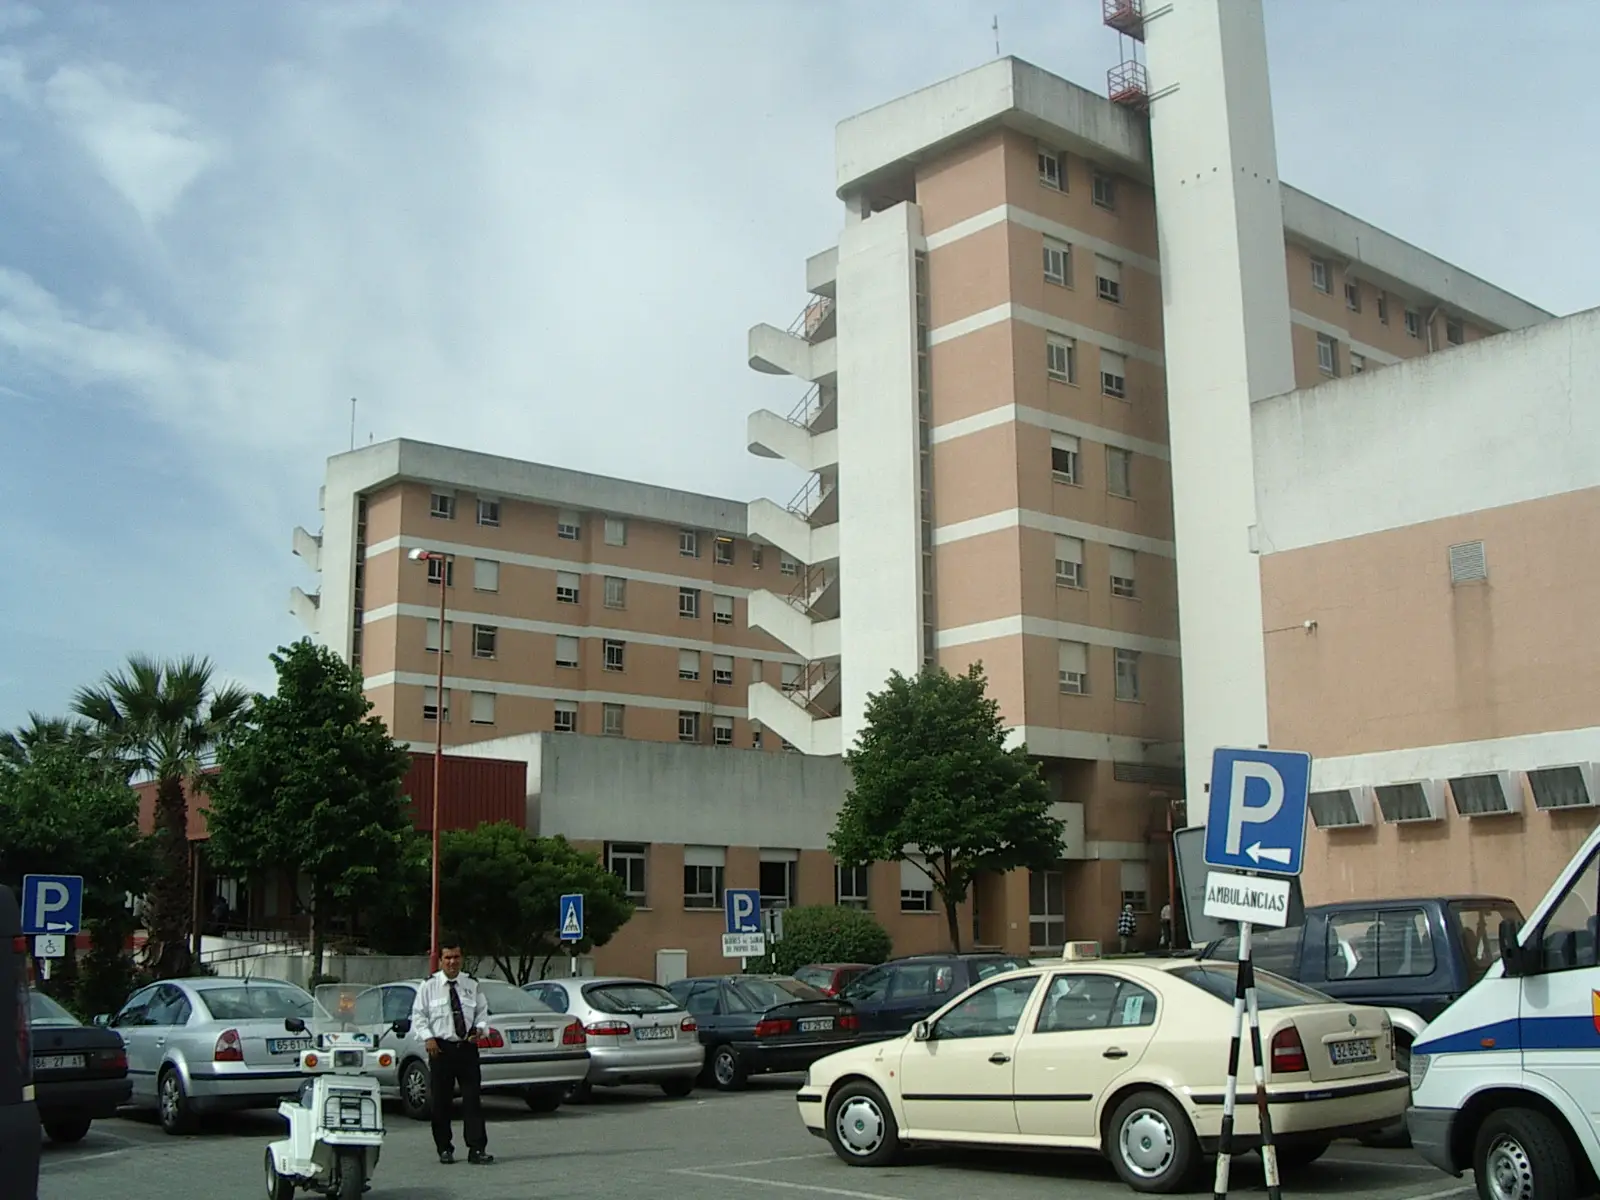 Urgências de Obstetrícia do Garcia de Orta encerram hoje e só reabrem na segunda-feira